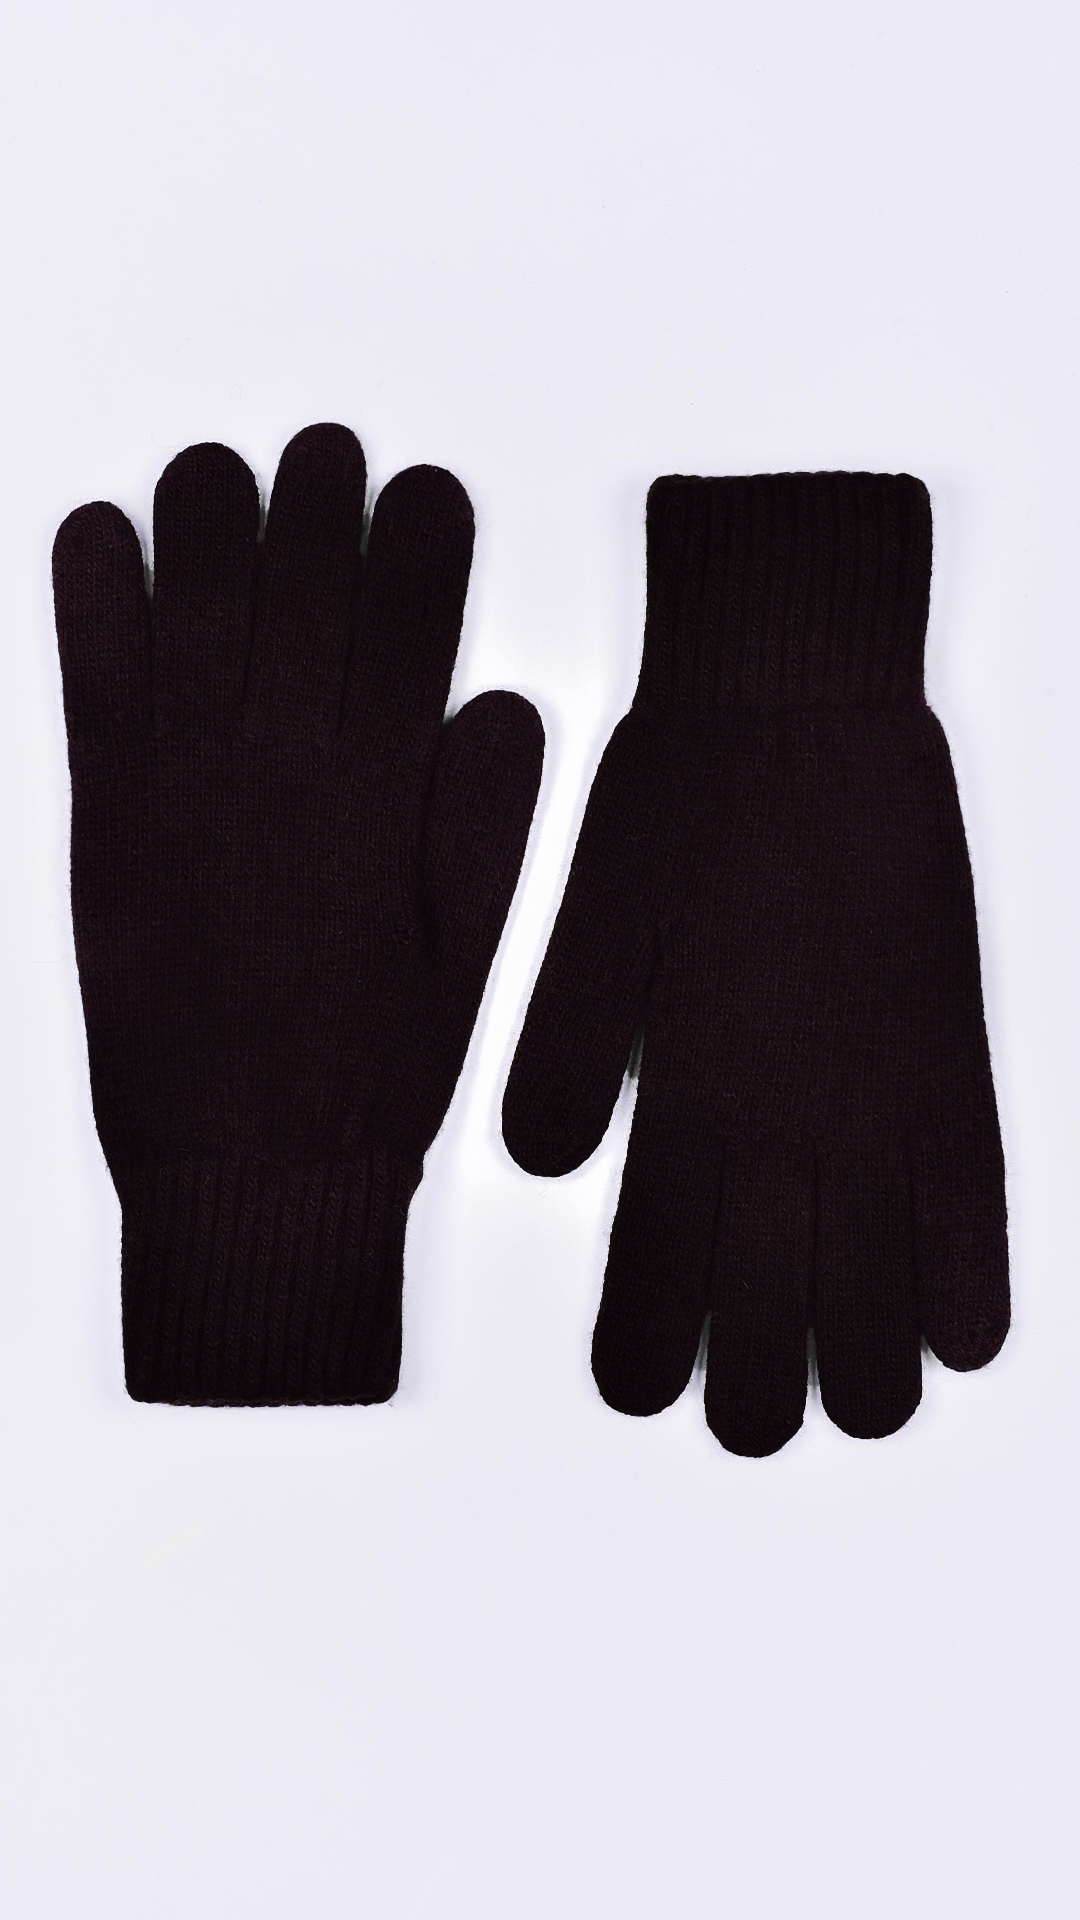 Glovesmixdario moro 1 1stAmerican guanti 100% puro cashmere da uomo Made in Italy - caldi guanti invernali